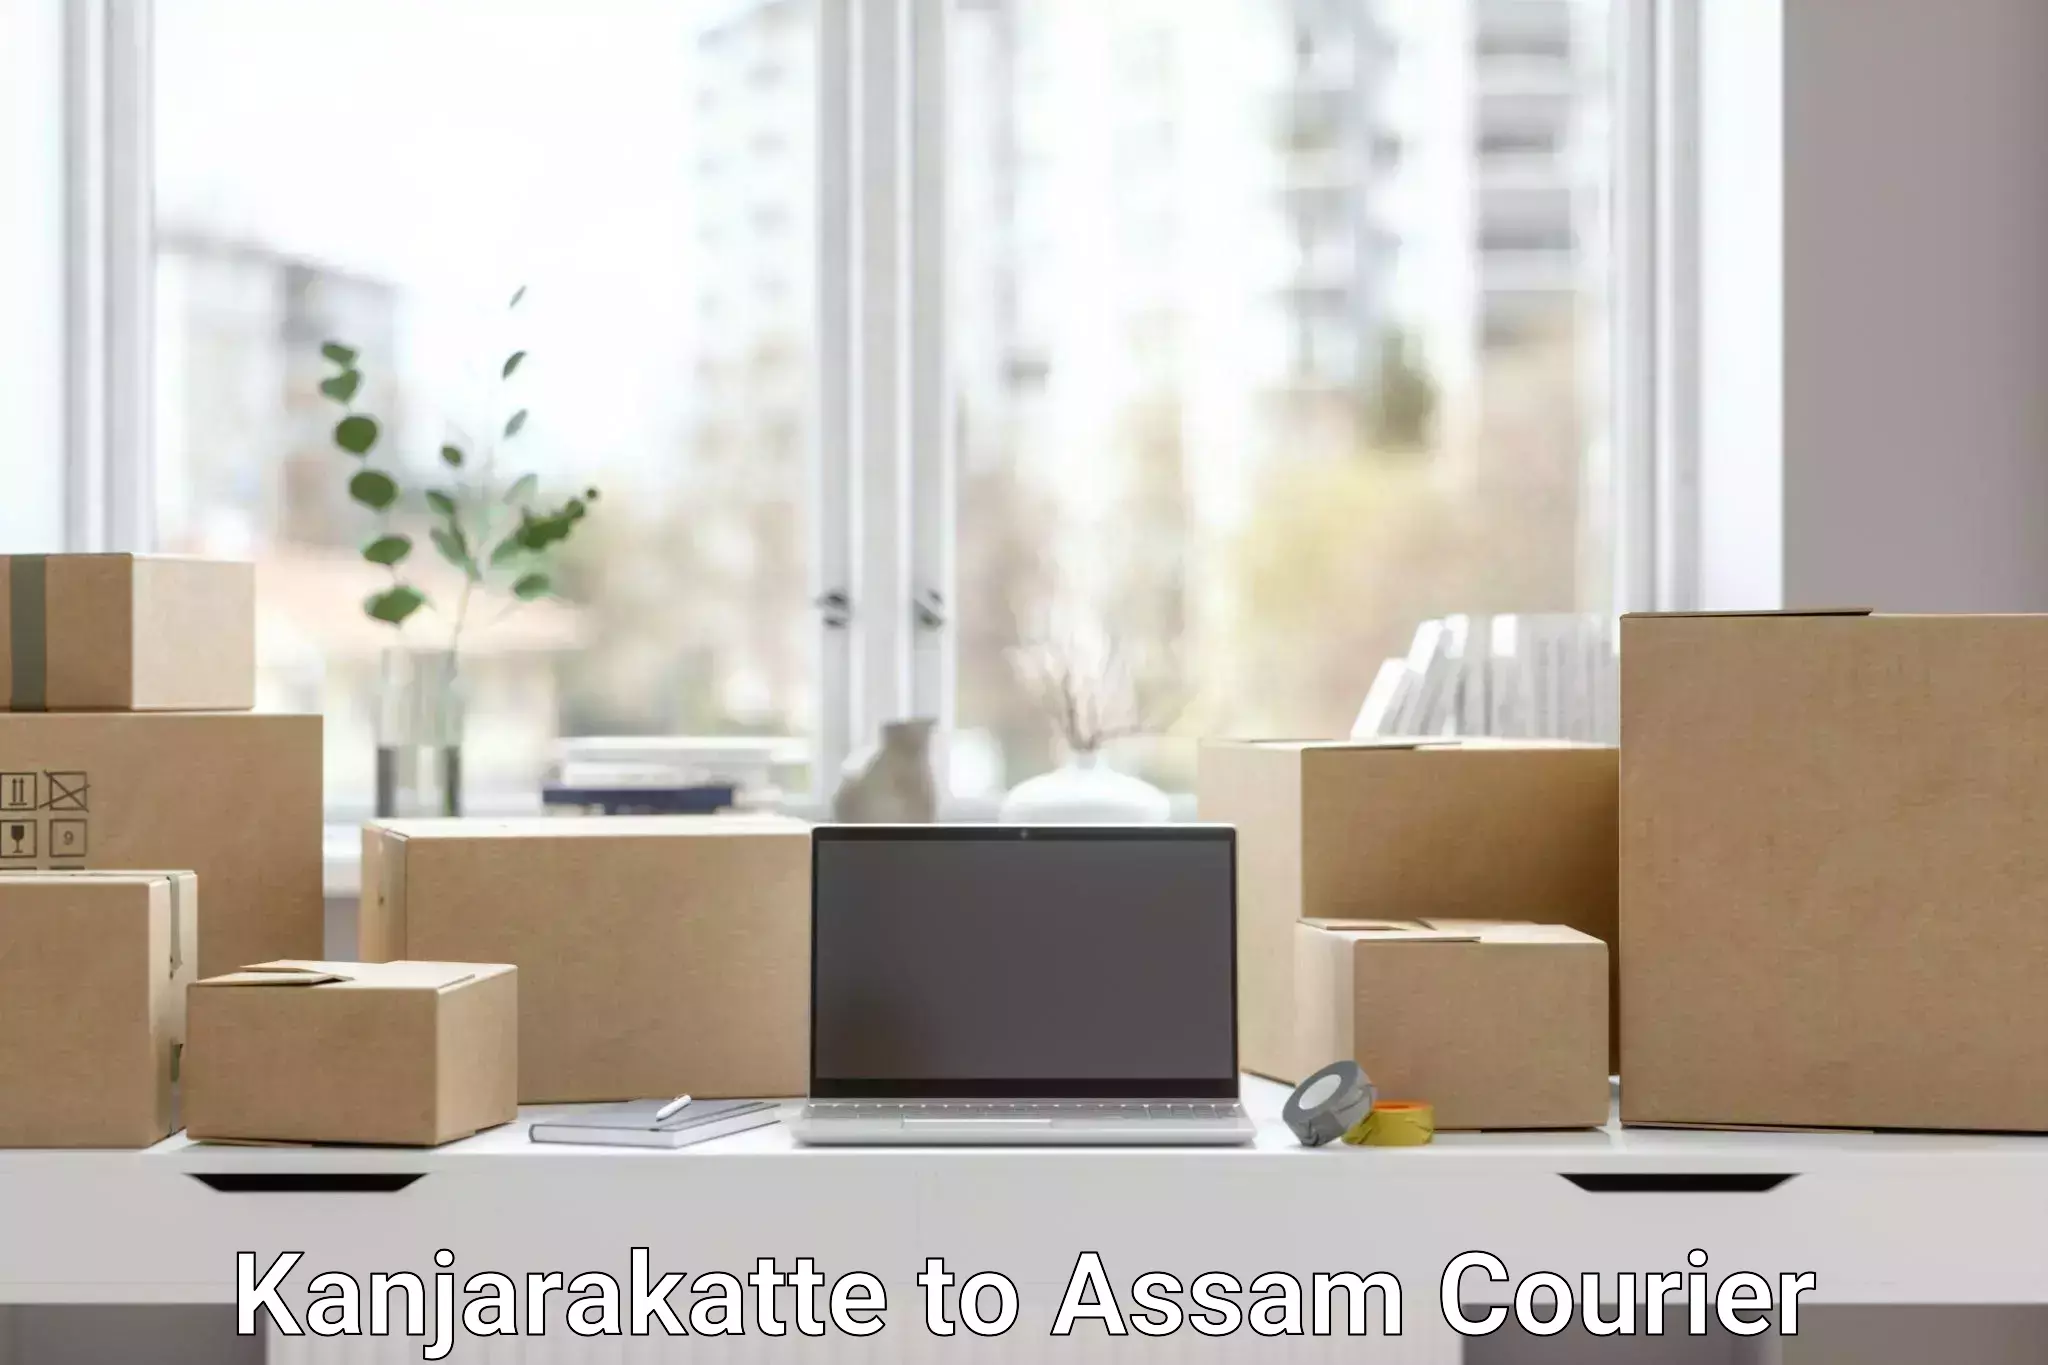 Nationwide delivery network Kanjarakatte to Assam